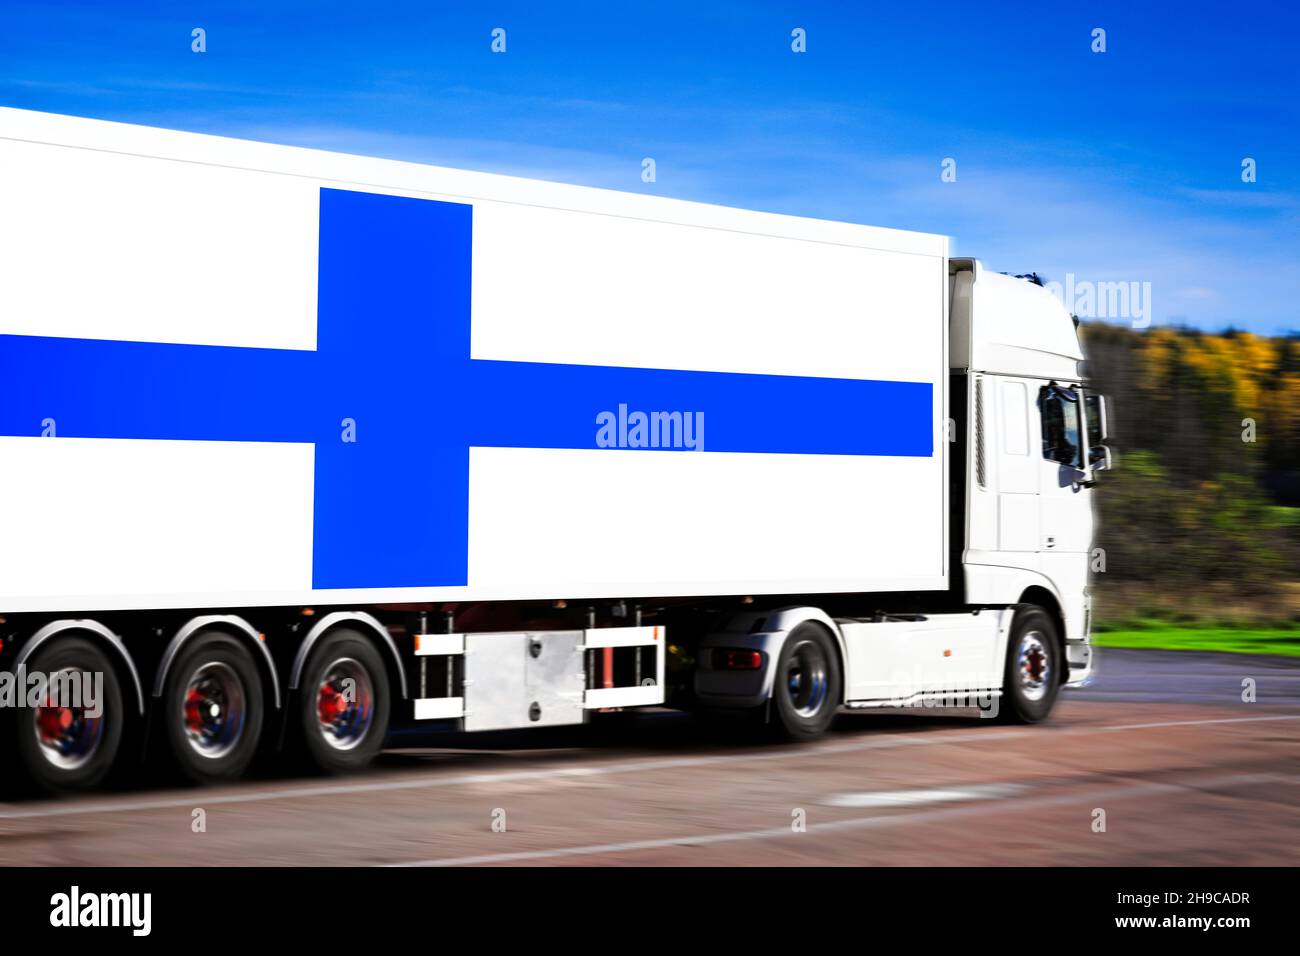 Weißer Sattelanhänger mit der Flagge Finnlands, die von einem leeren Lastwagen in Bewegung gezogen wird, Bewegungsunschärfeeffekte. Stockfoto